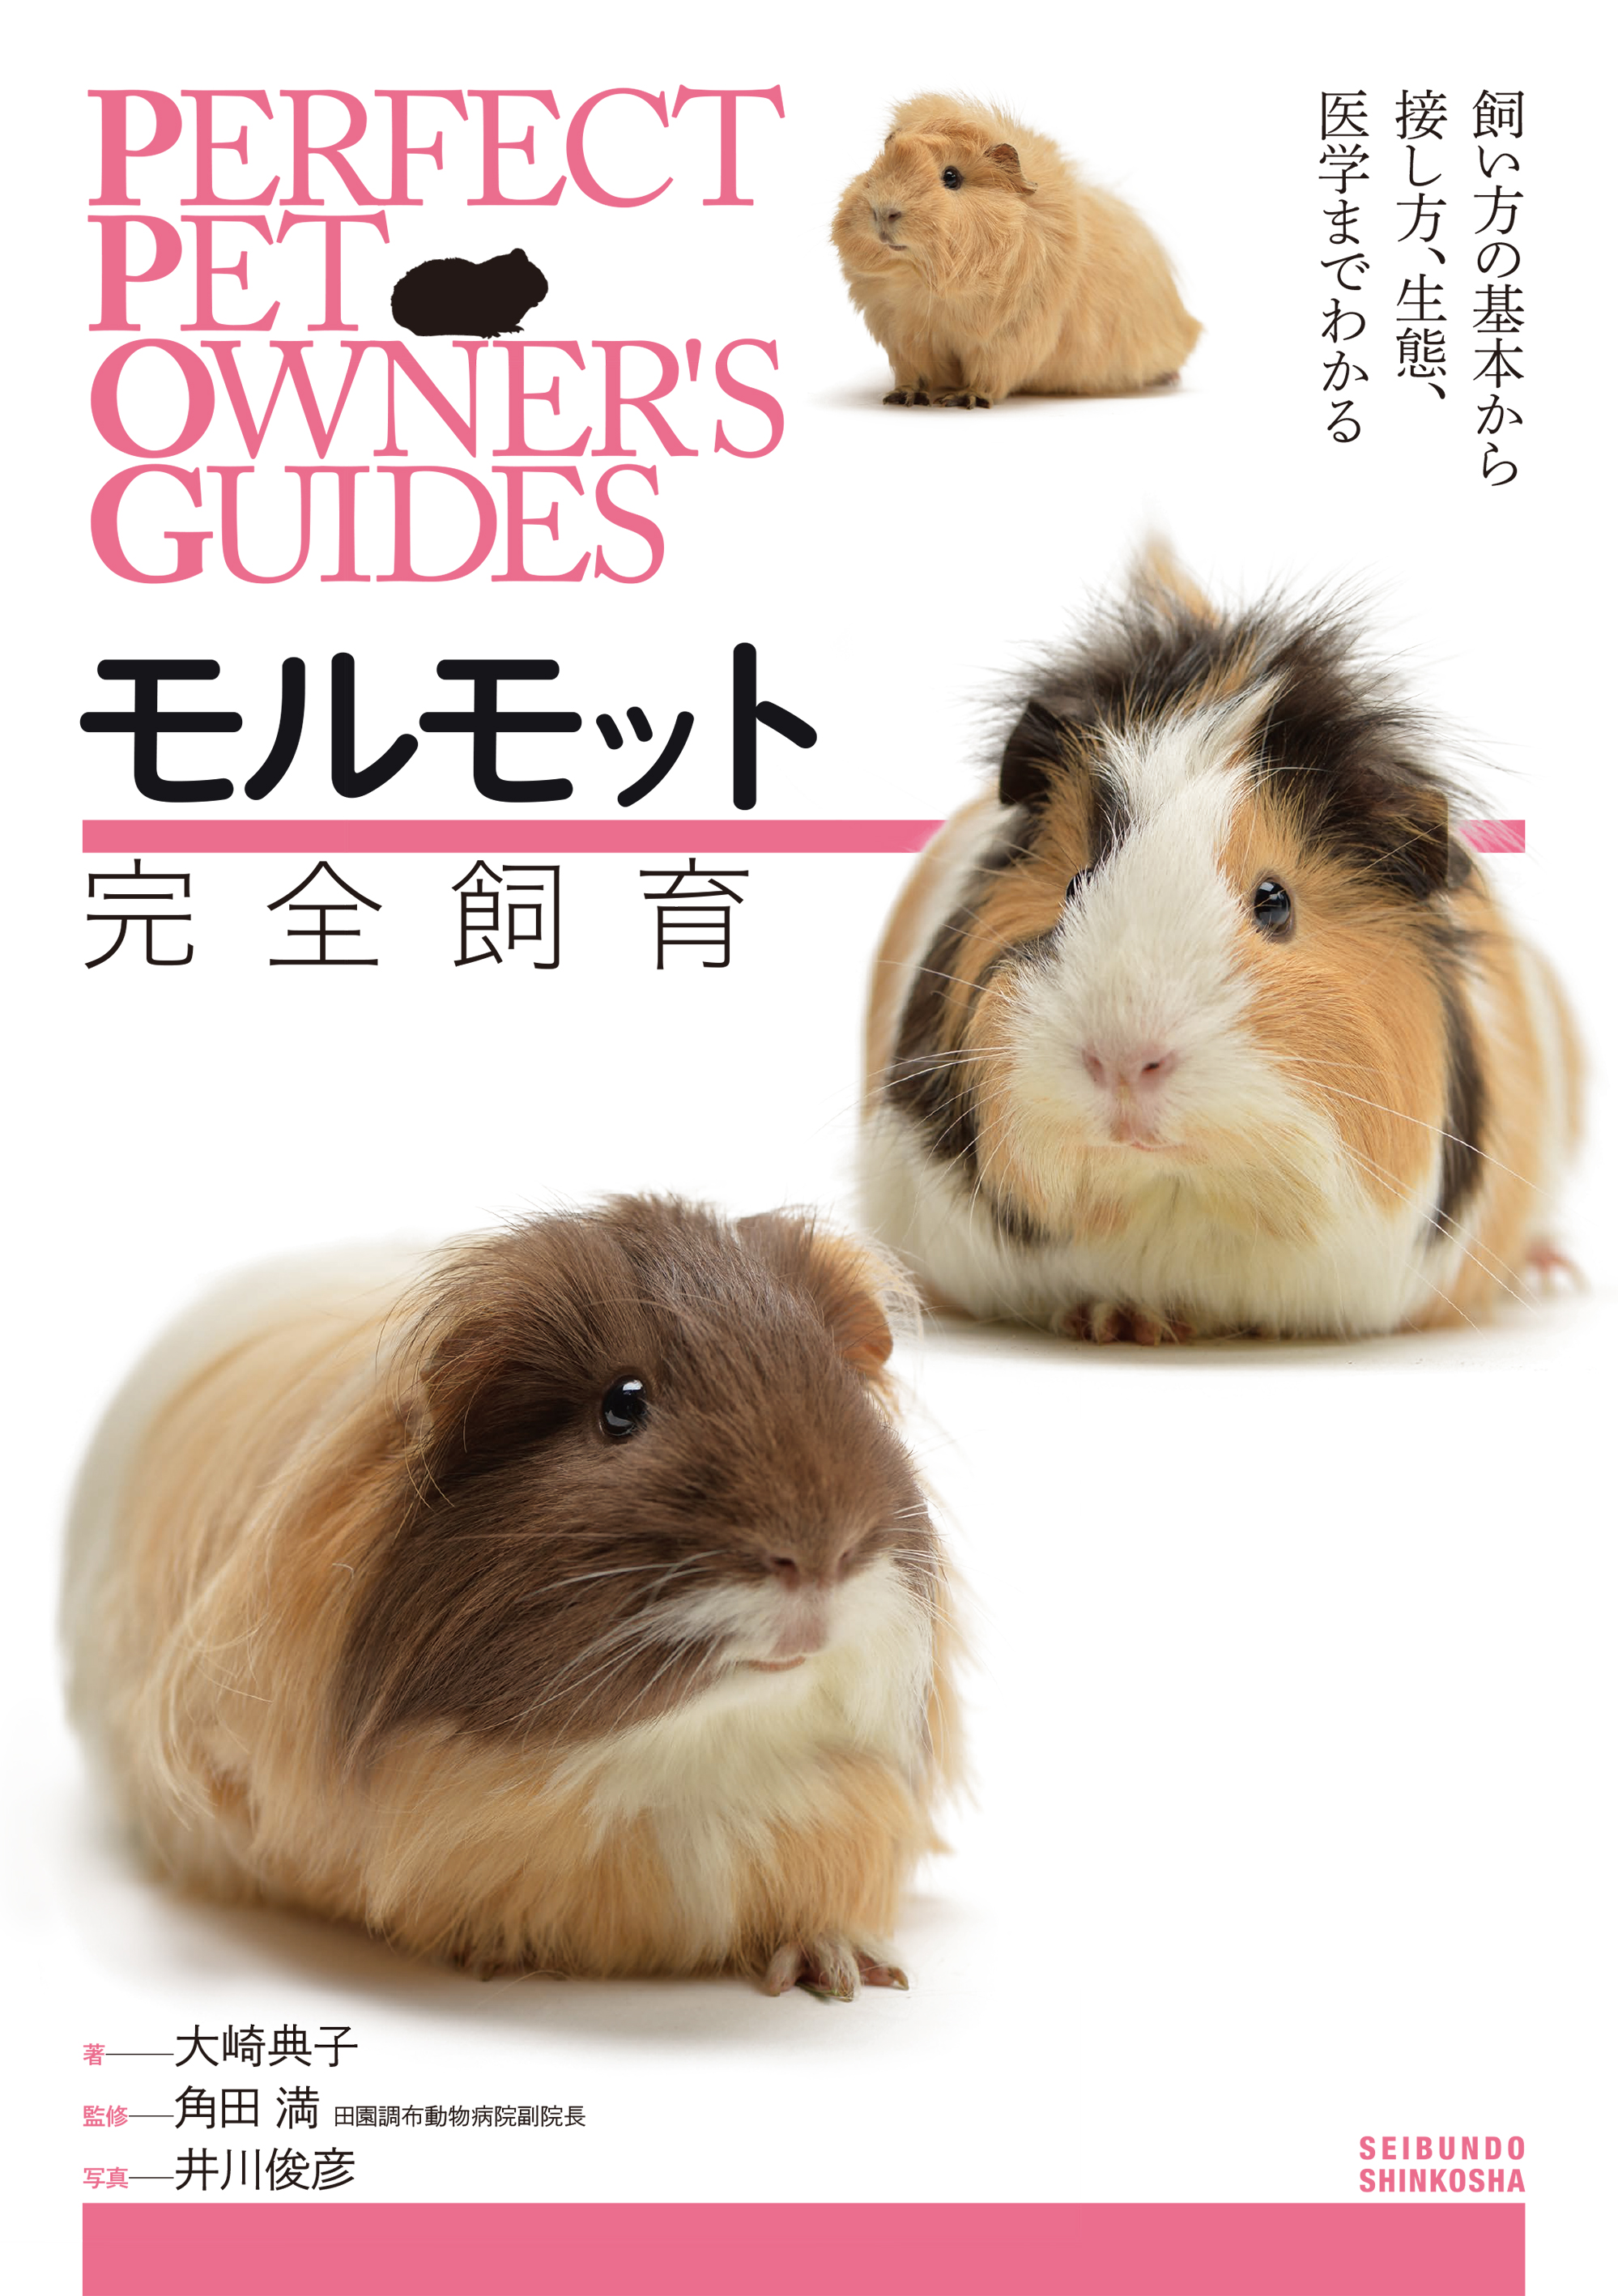 この一冊ですべてわかる Perfect Pet Owner S Guide モルモット完全飼育 刊行のお知らせ 株式会社誠文堂新光社のプレスリリース